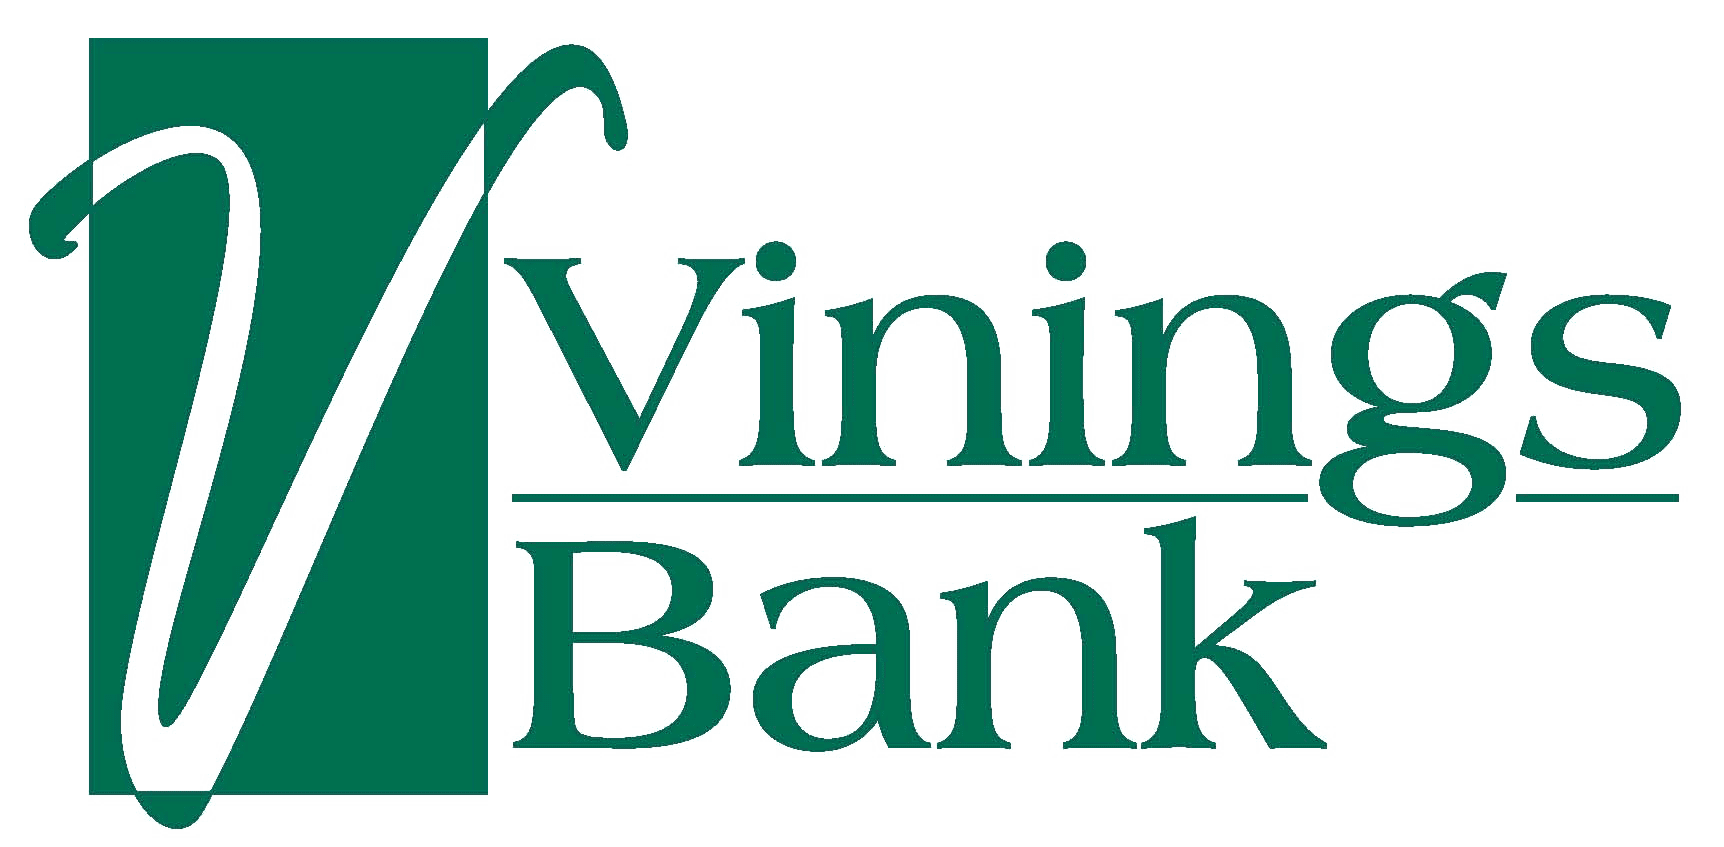 ViningsBank